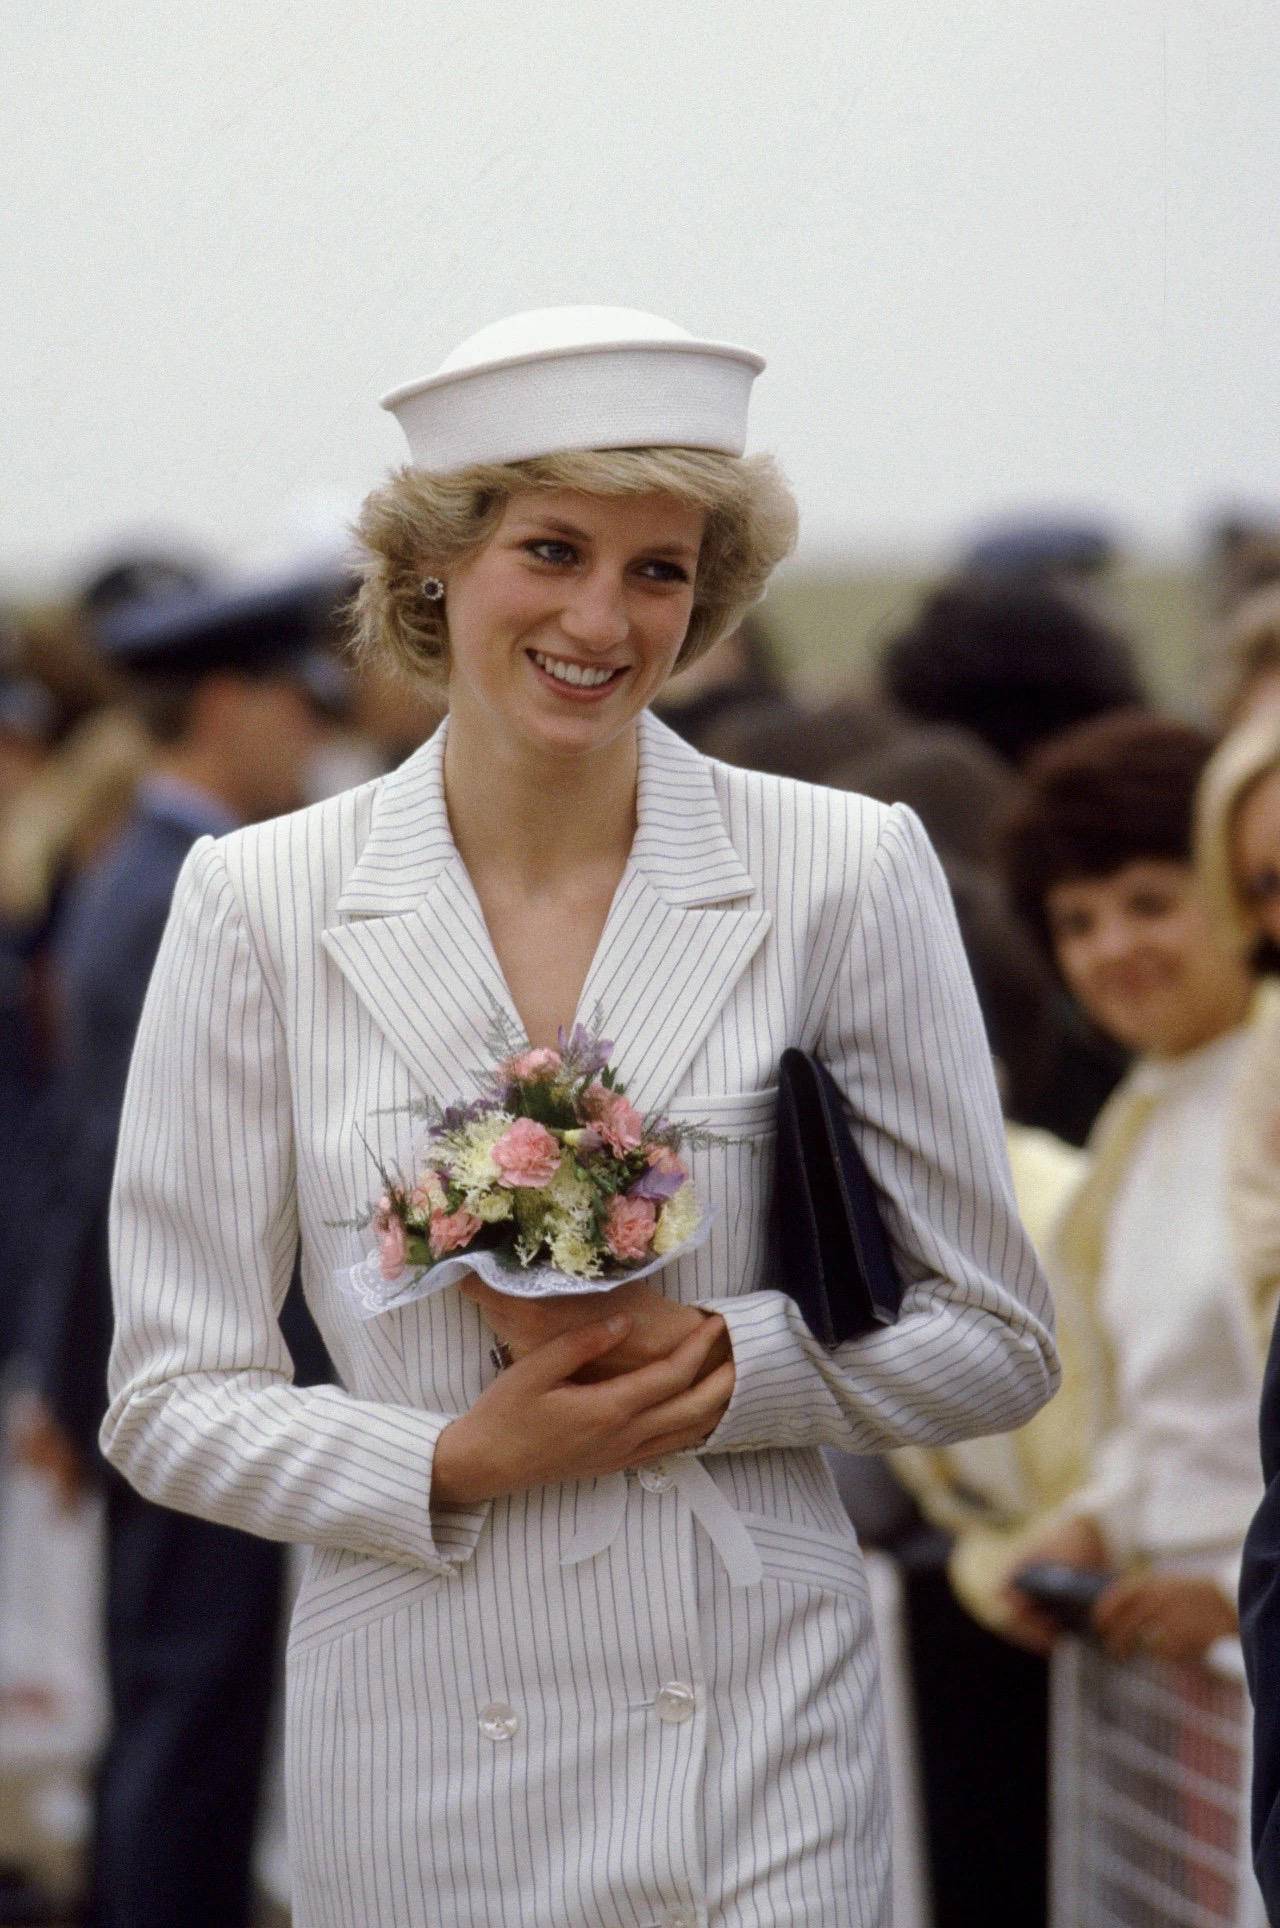 英国另一位女性代表人就是戴安娜王妃,照片上王妃的服装也完美的体现